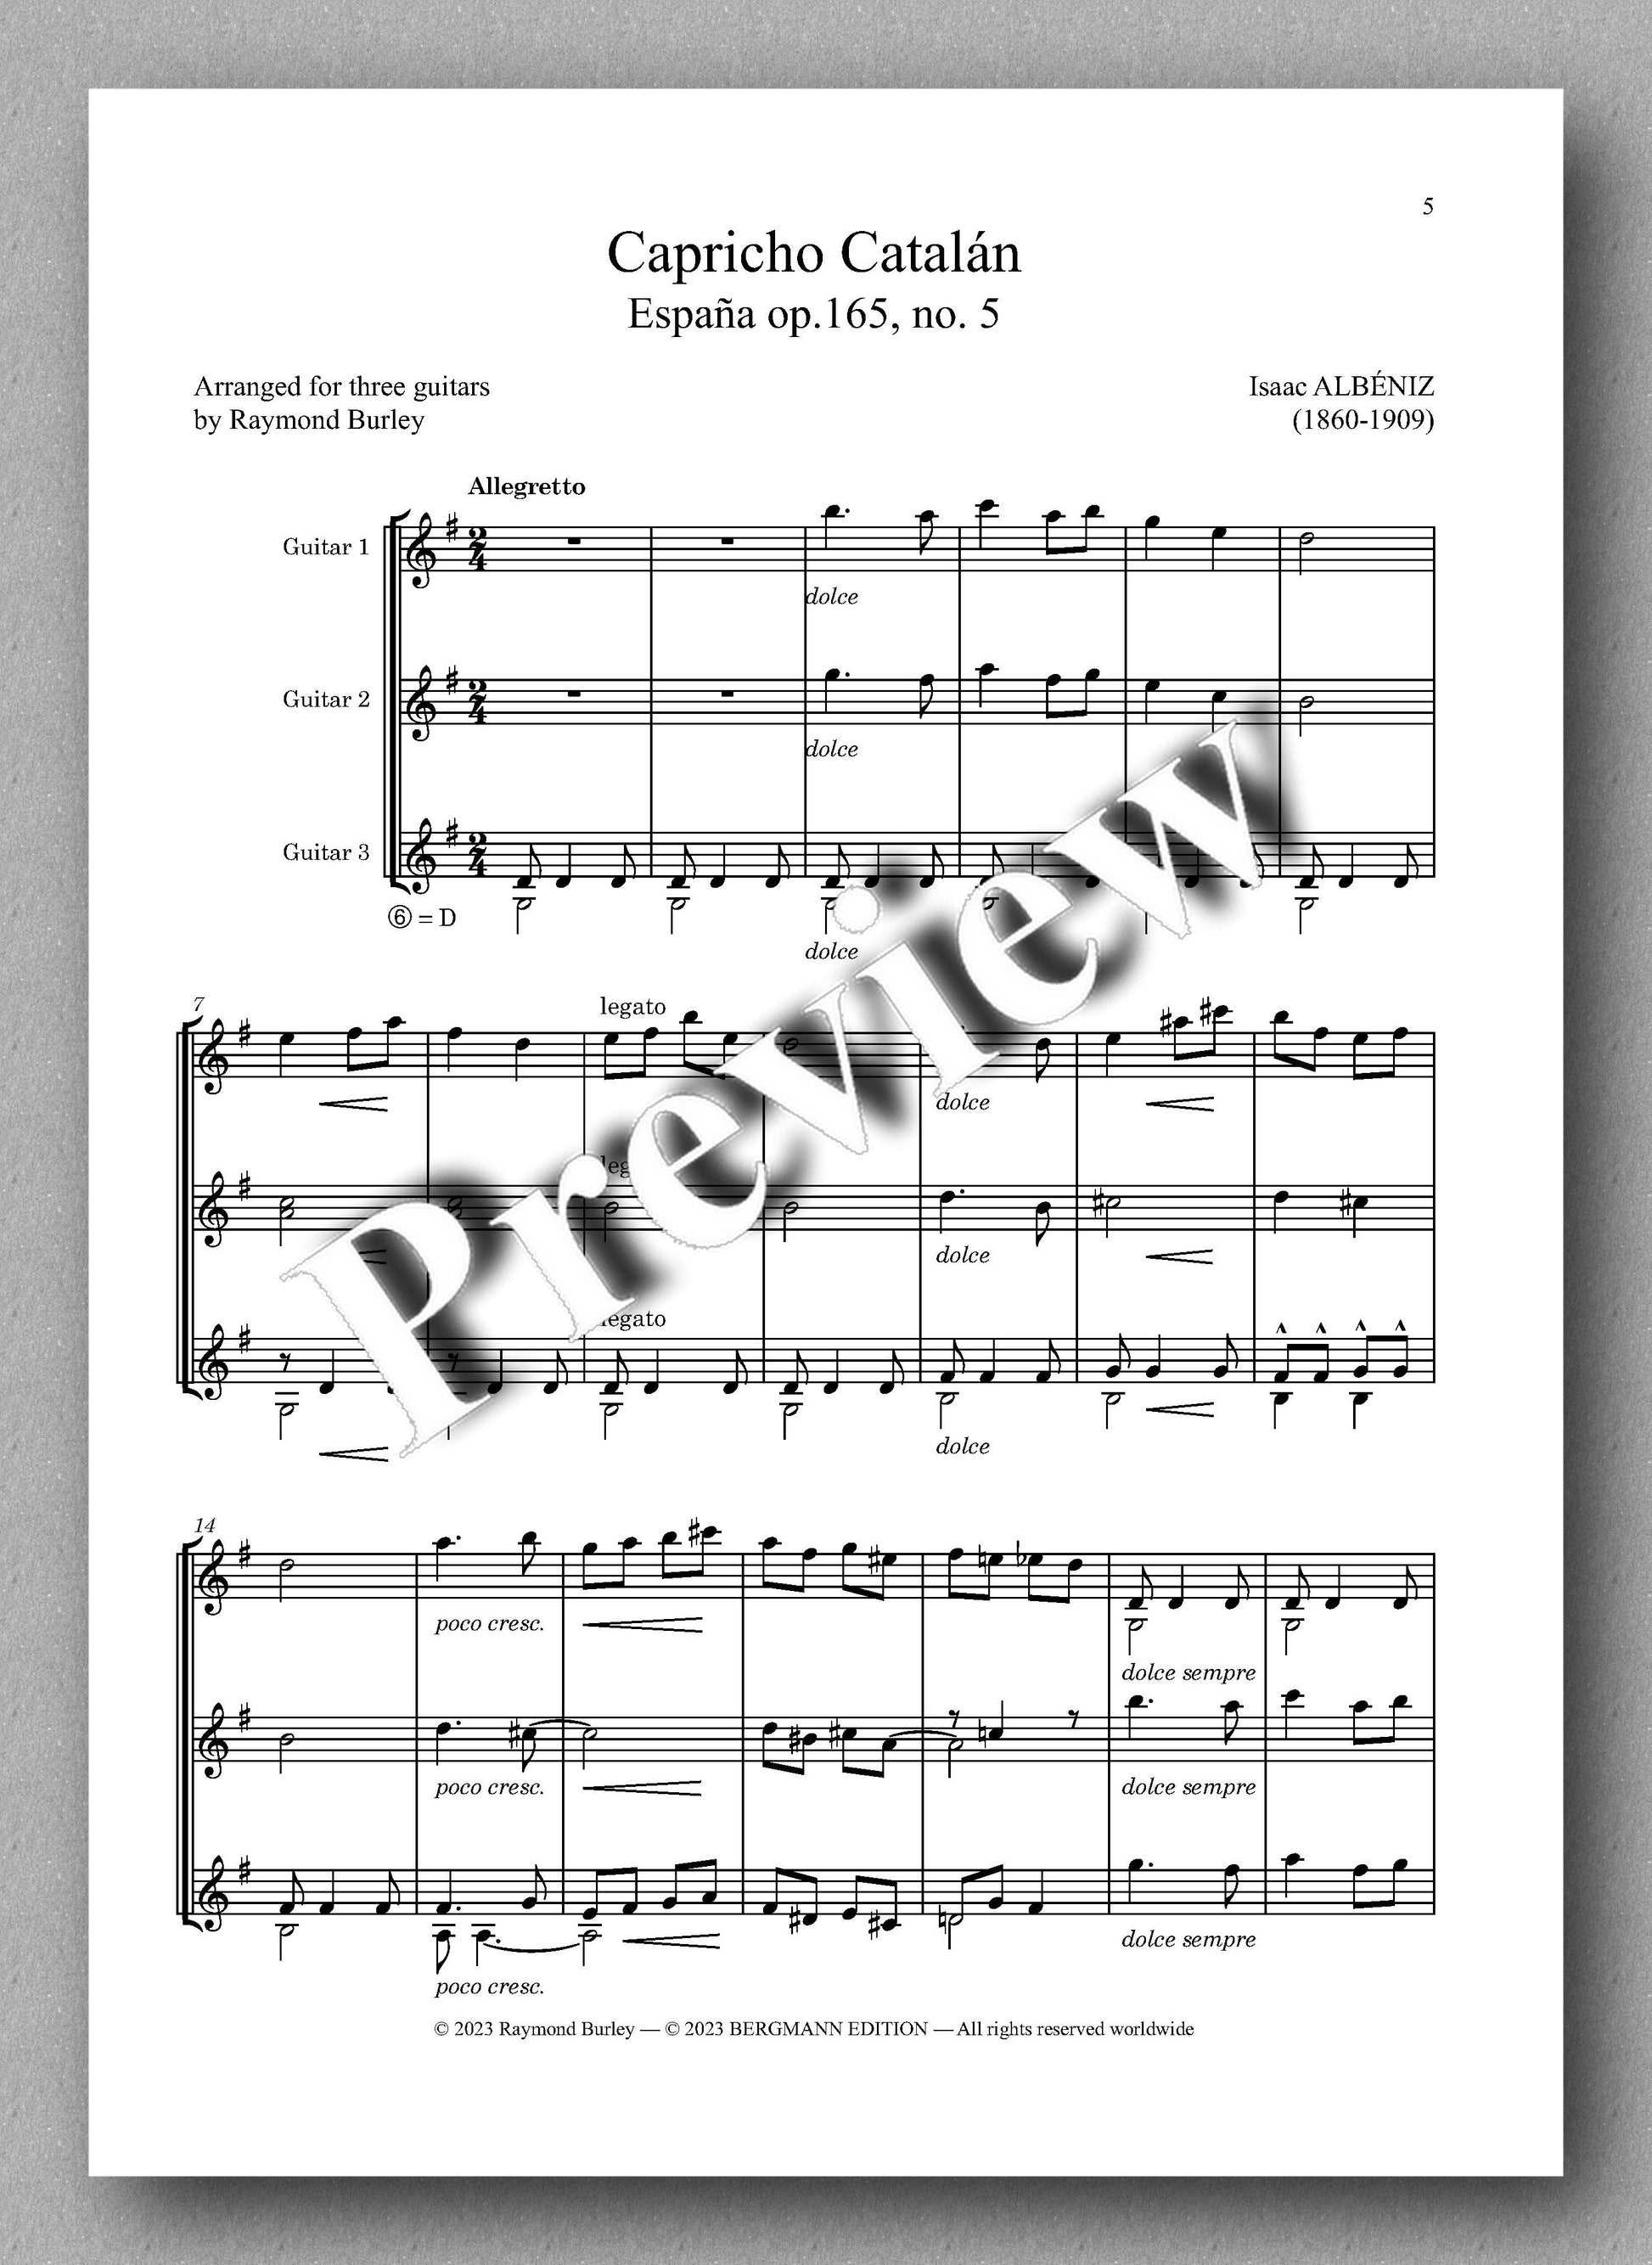 Albéniz-Burley, Capricho Catalán - preview of the music score 1